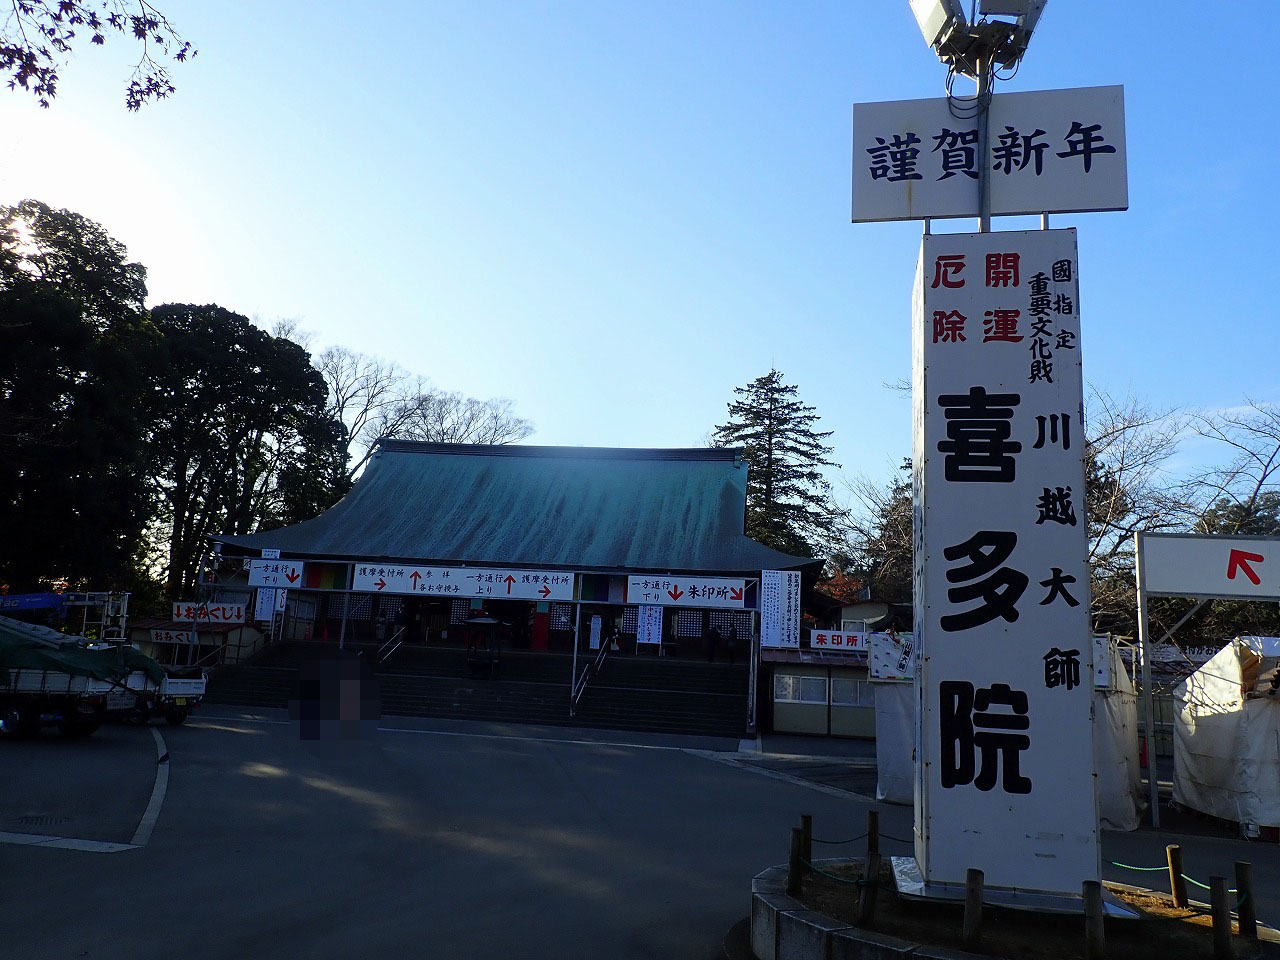 川越を代表する寺社仏閣の『喜多院』